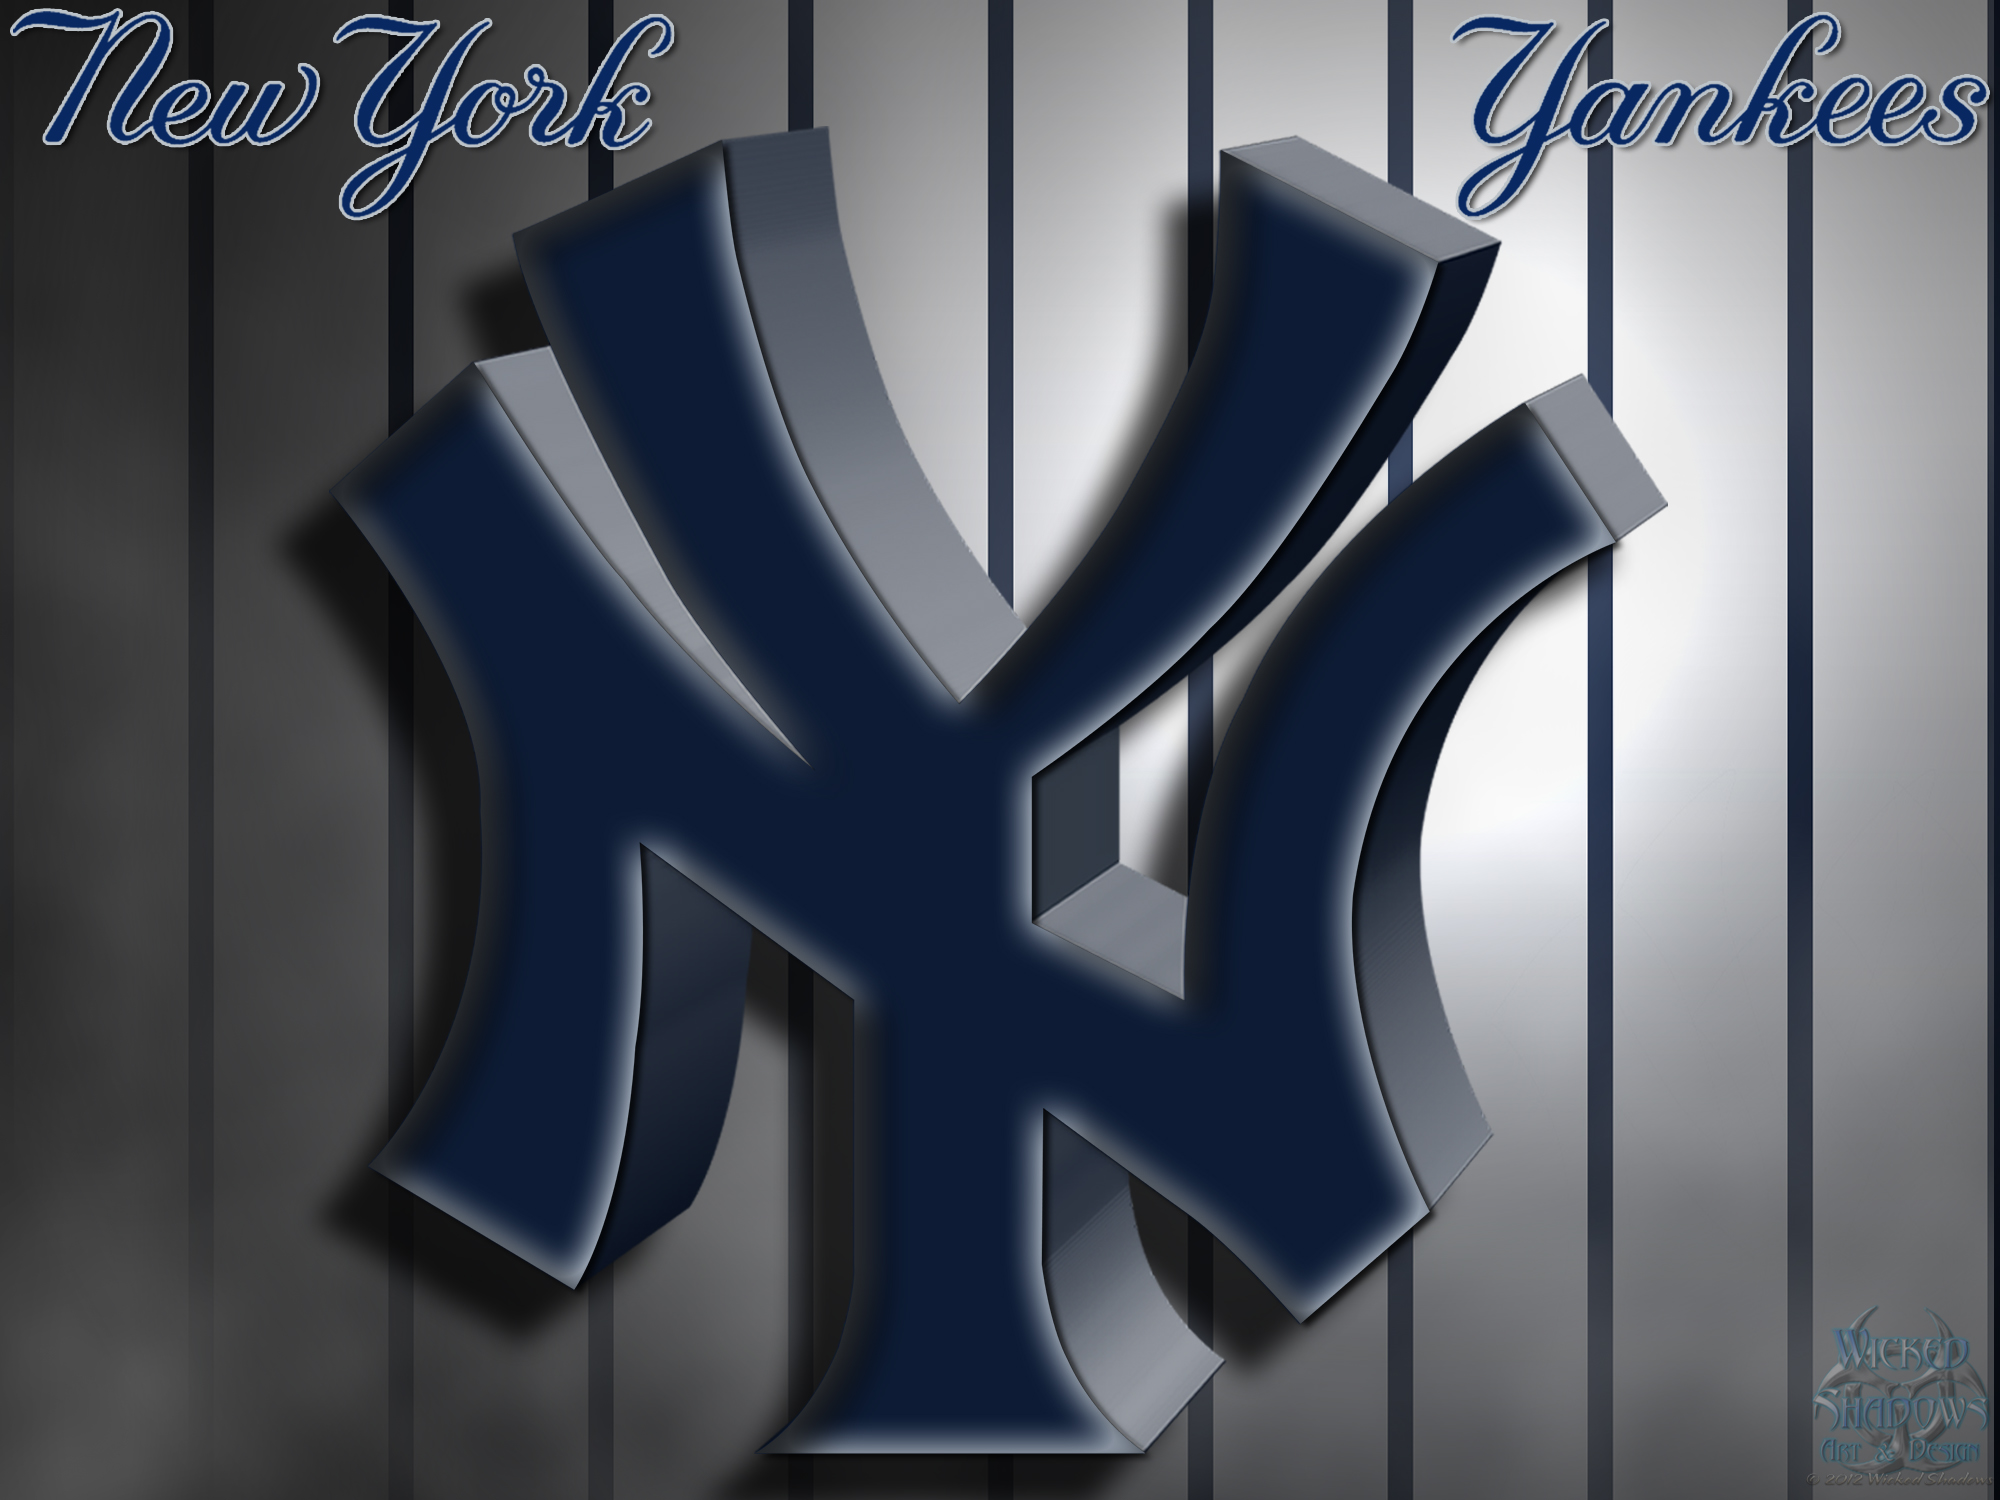 [70+] New York Yankees Logo Wallpapers | WallpaperSafari